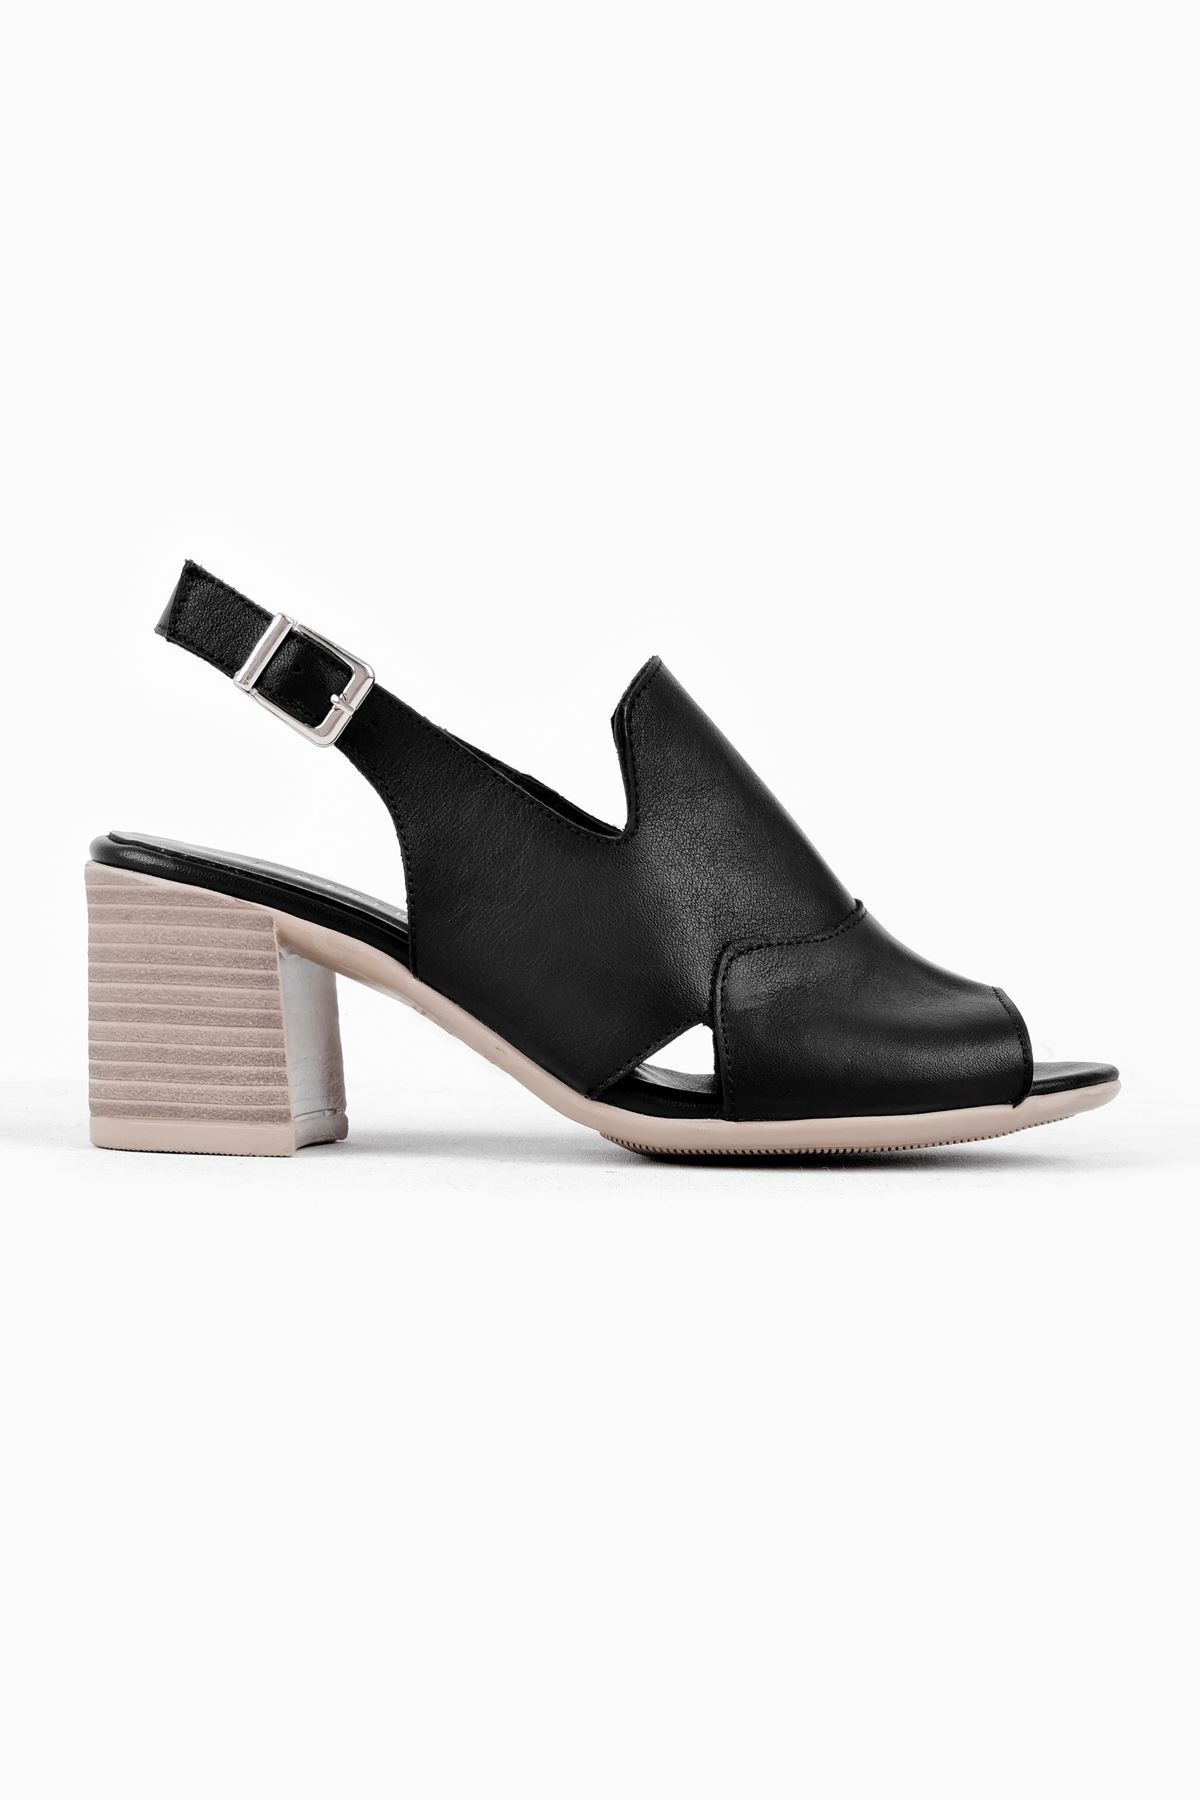 Andry Kadın Hakiki Deri Arkası Açık Topuklu Sandalet-B3129 - Siyah